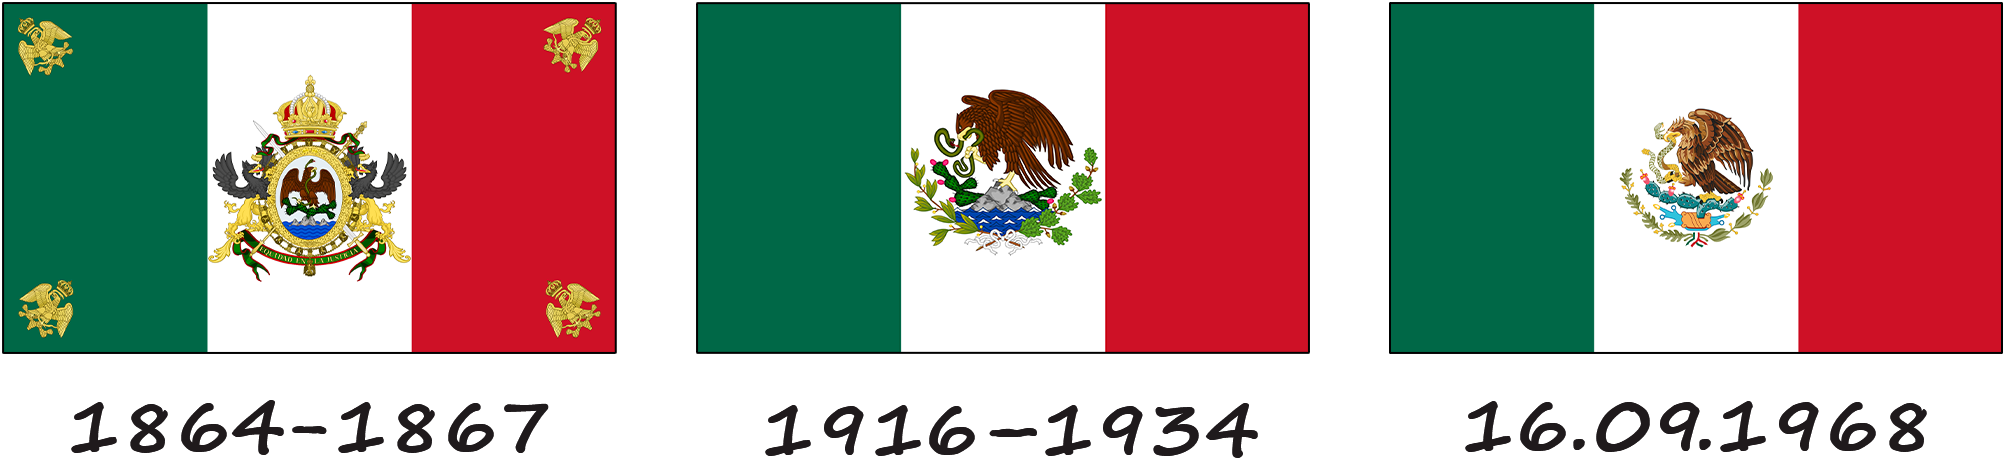 Історія мексиканського прапора